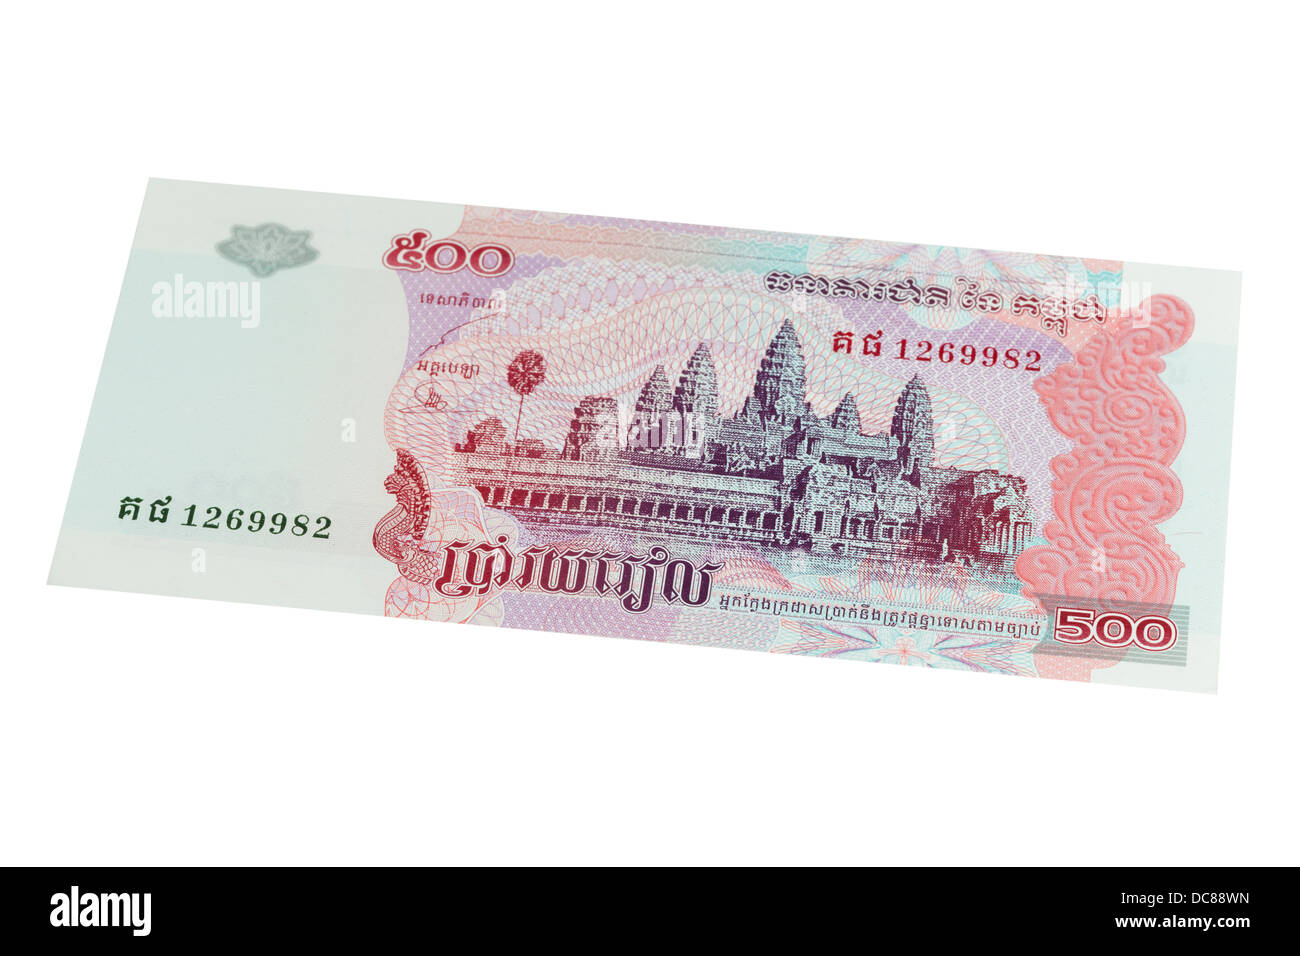 Cinq cents riel cambodgien note sur un fond blanc Banque D'Images